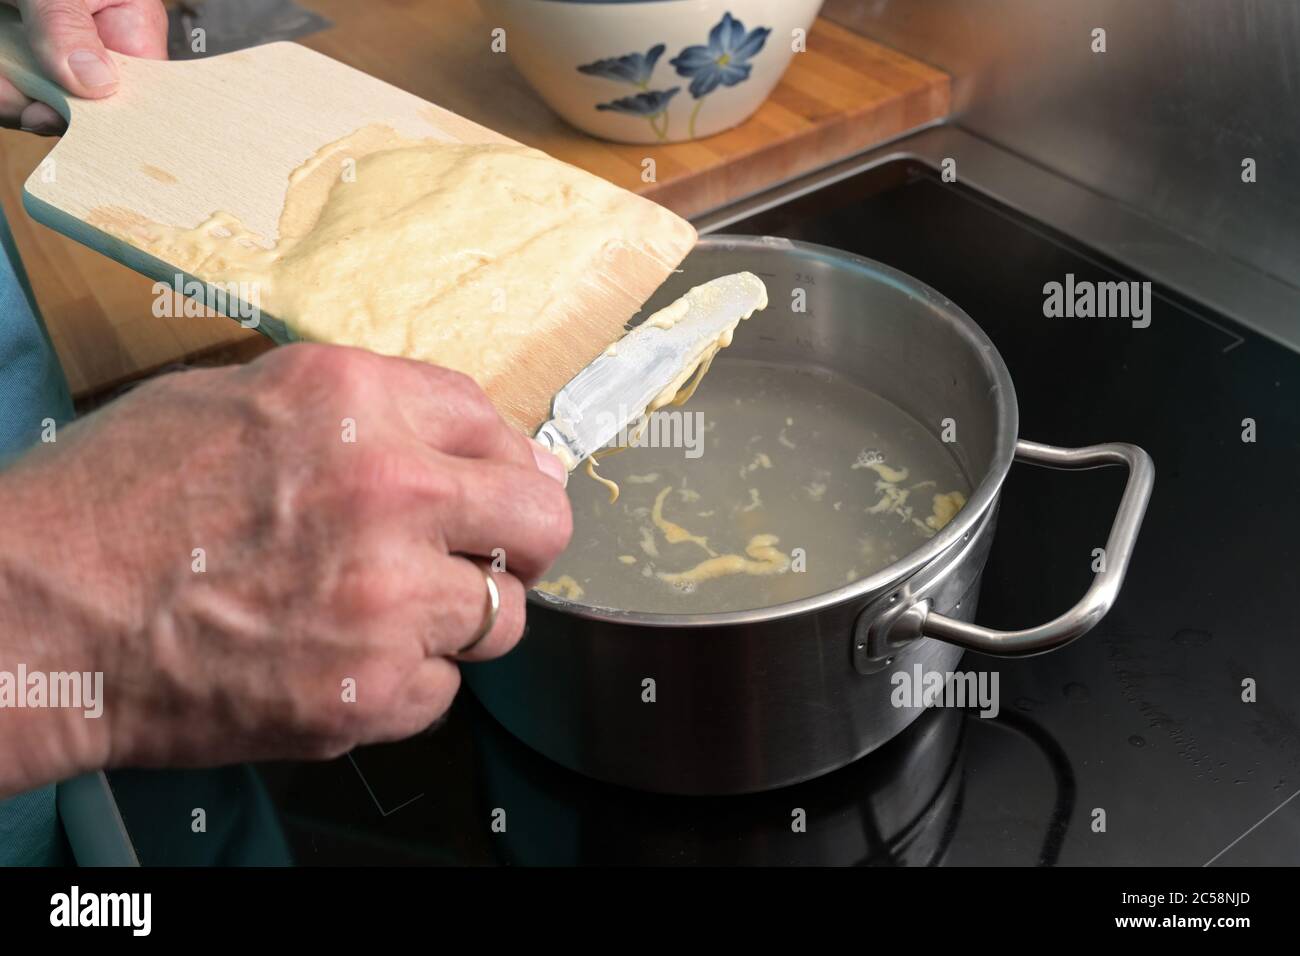 Kochen spätzle, Hände eines Mannes kratzen hausgemachten Eiernudelteig von einem Holzbrett in kochendes Wasser, typisches Gericht in Schwaben, Südland Stockfoto